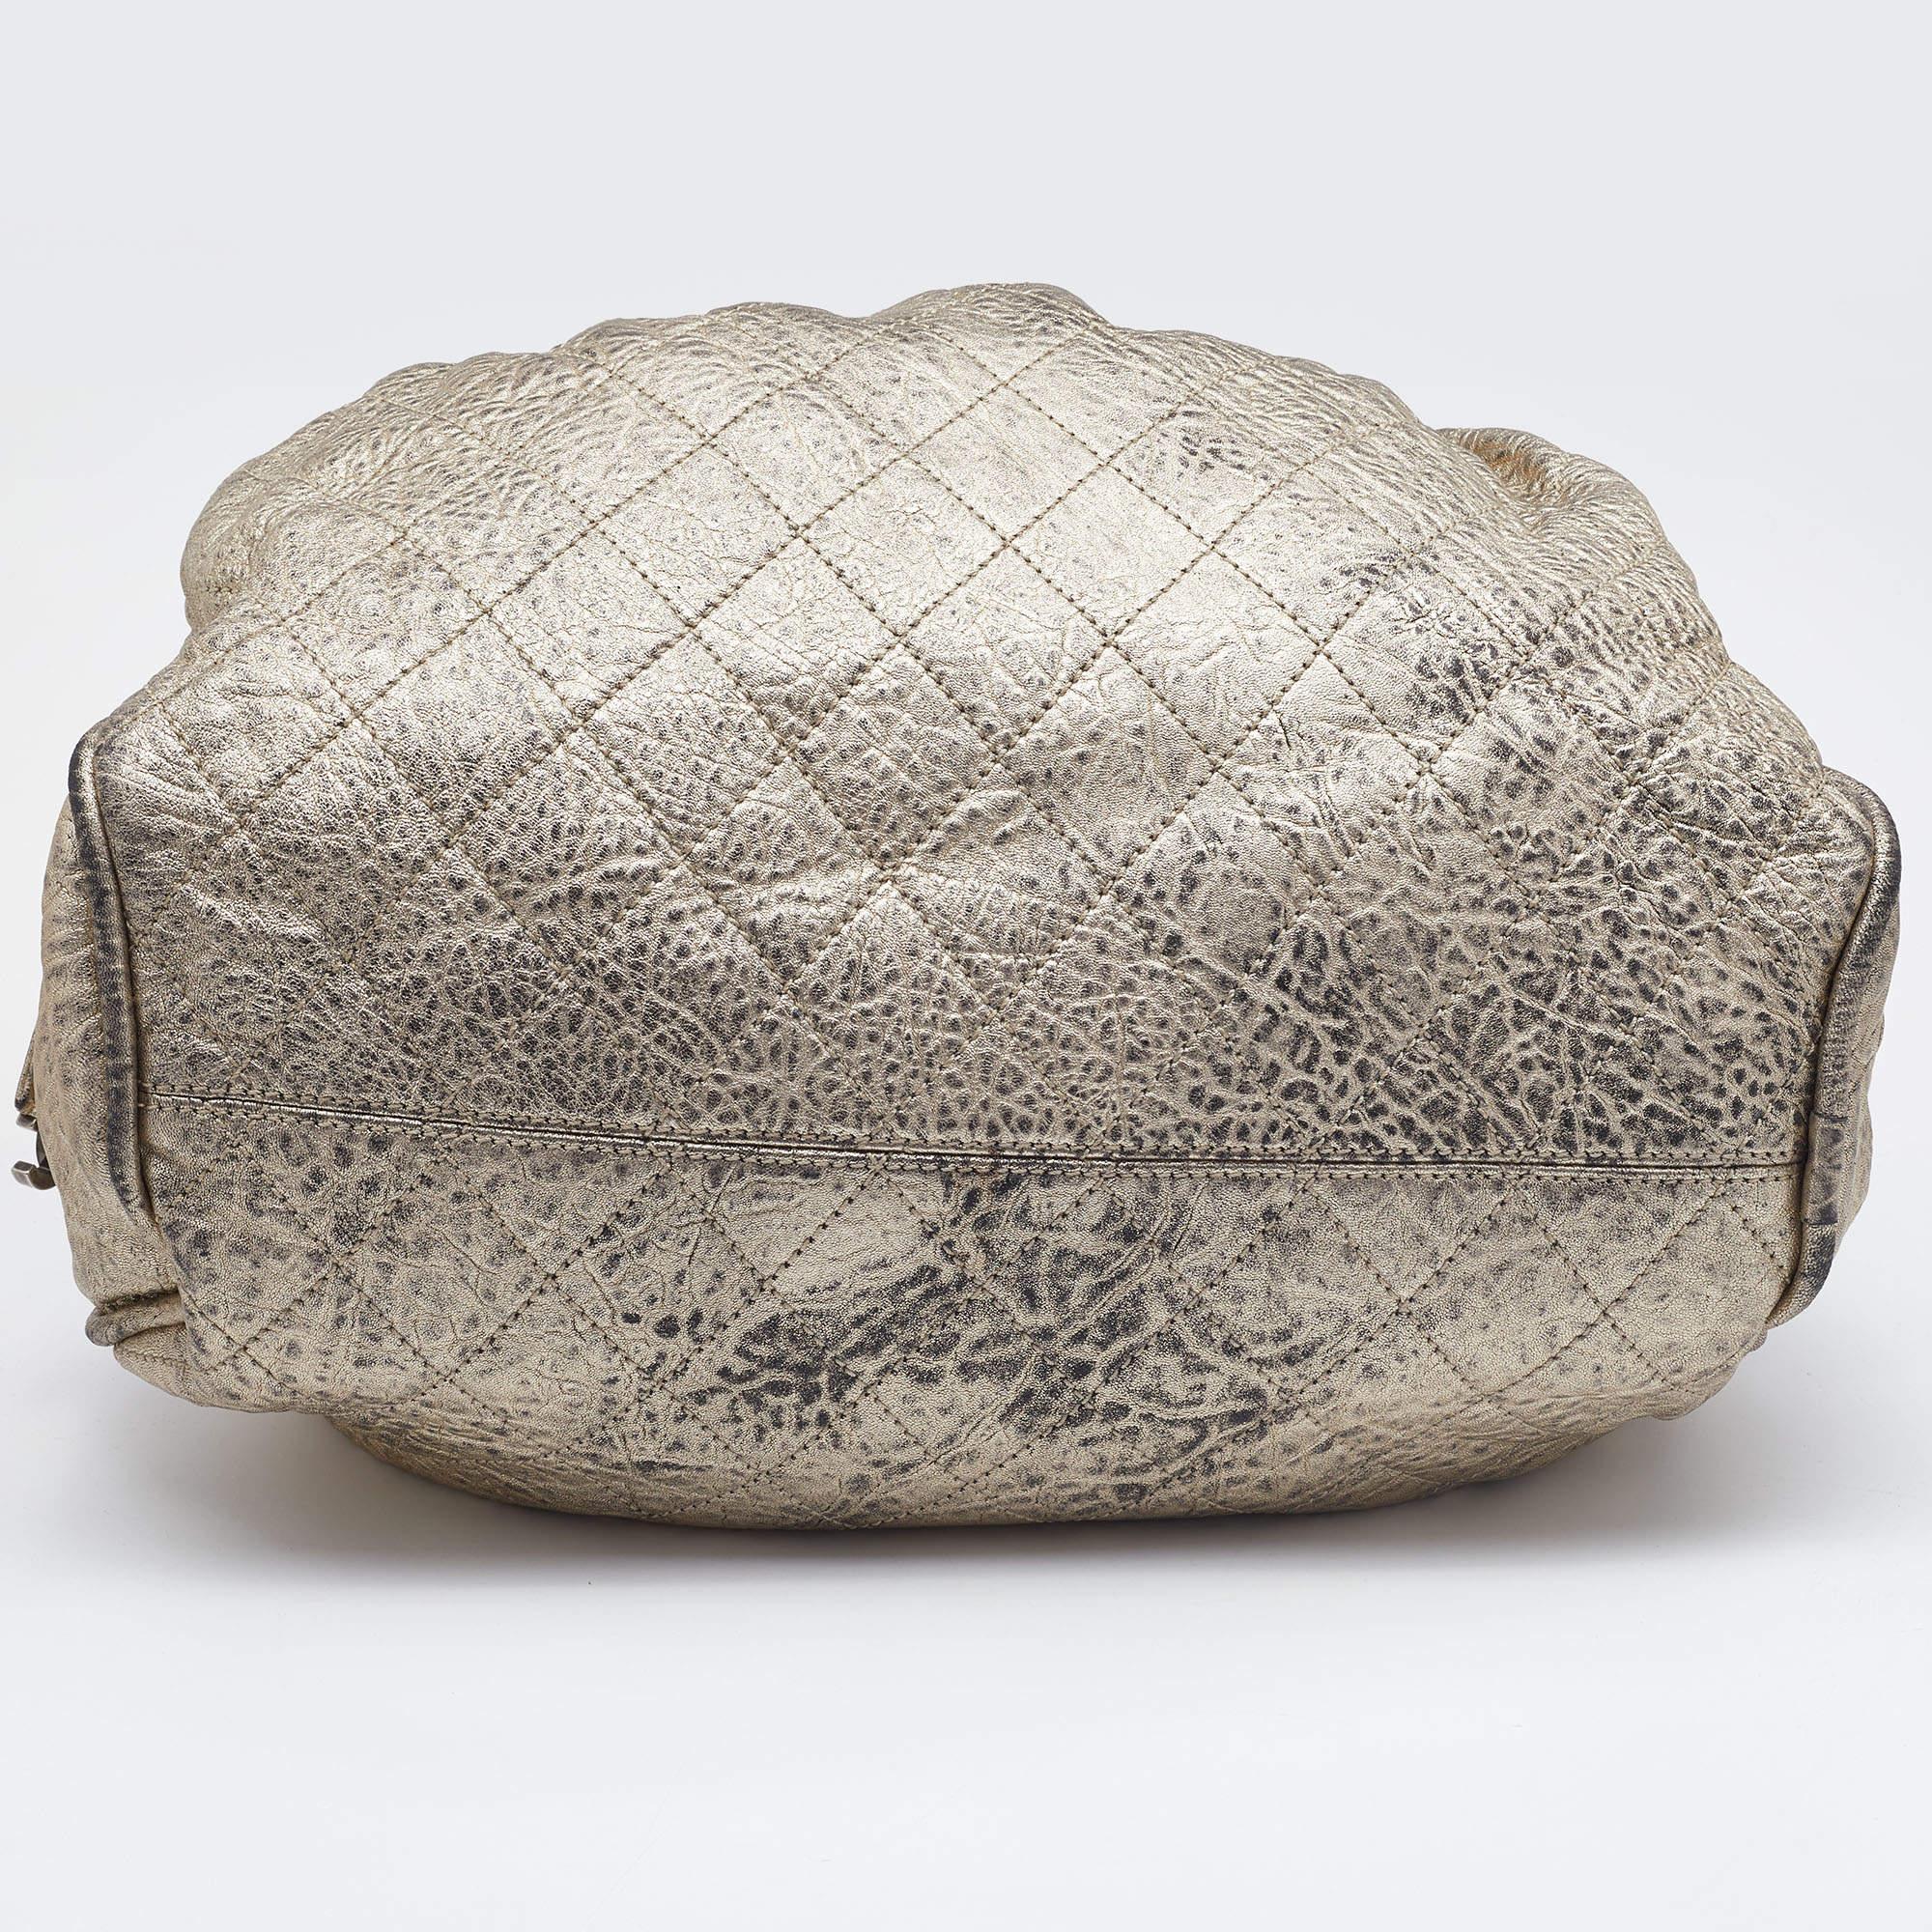 Women's Chanel Gold Textured Leather Wild Stich Weekender Bag